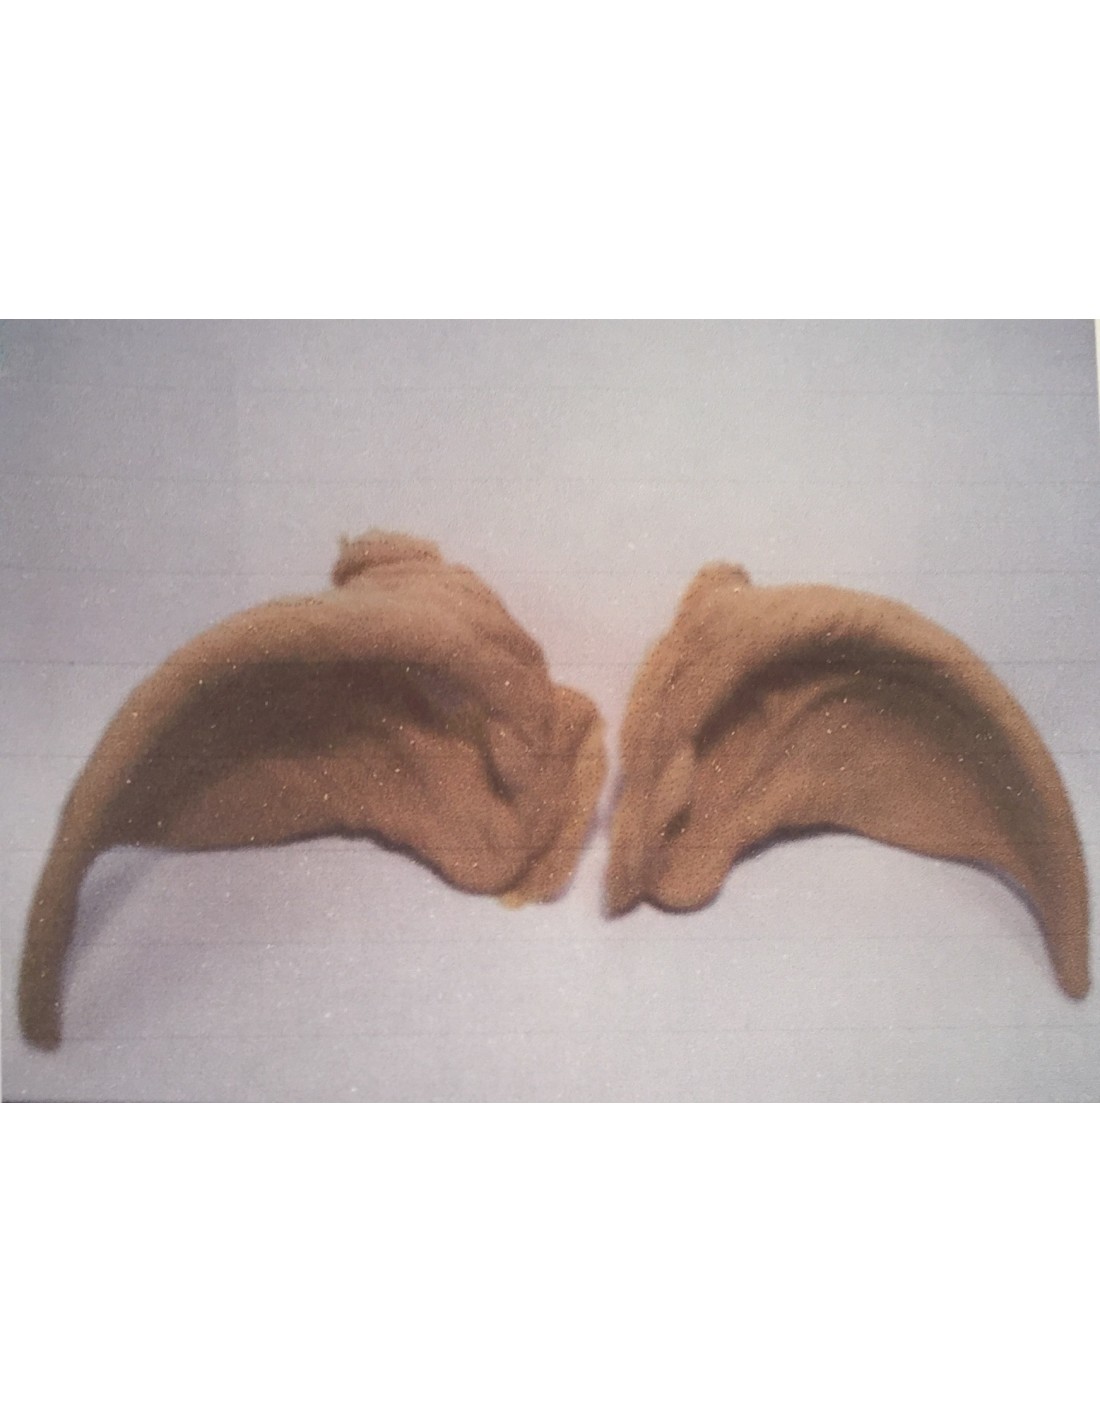 Oxum FX - Protesis de orejas de elfo para promocion de